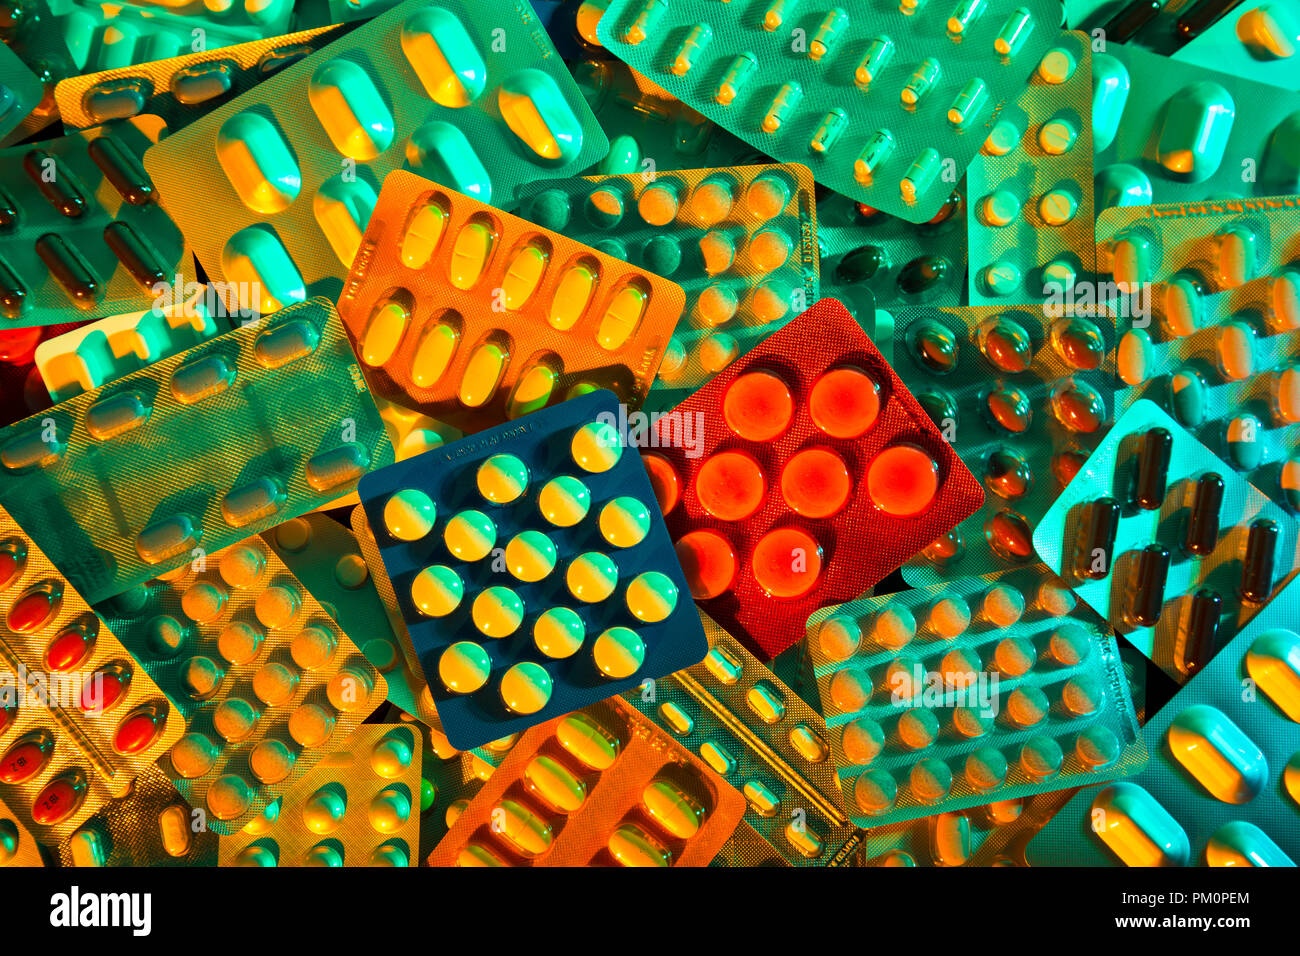 Von Tabletten in Blisterpackungen Stack, Color Gele, Labor, dunklen finsteren Hintergrund Stockfoto